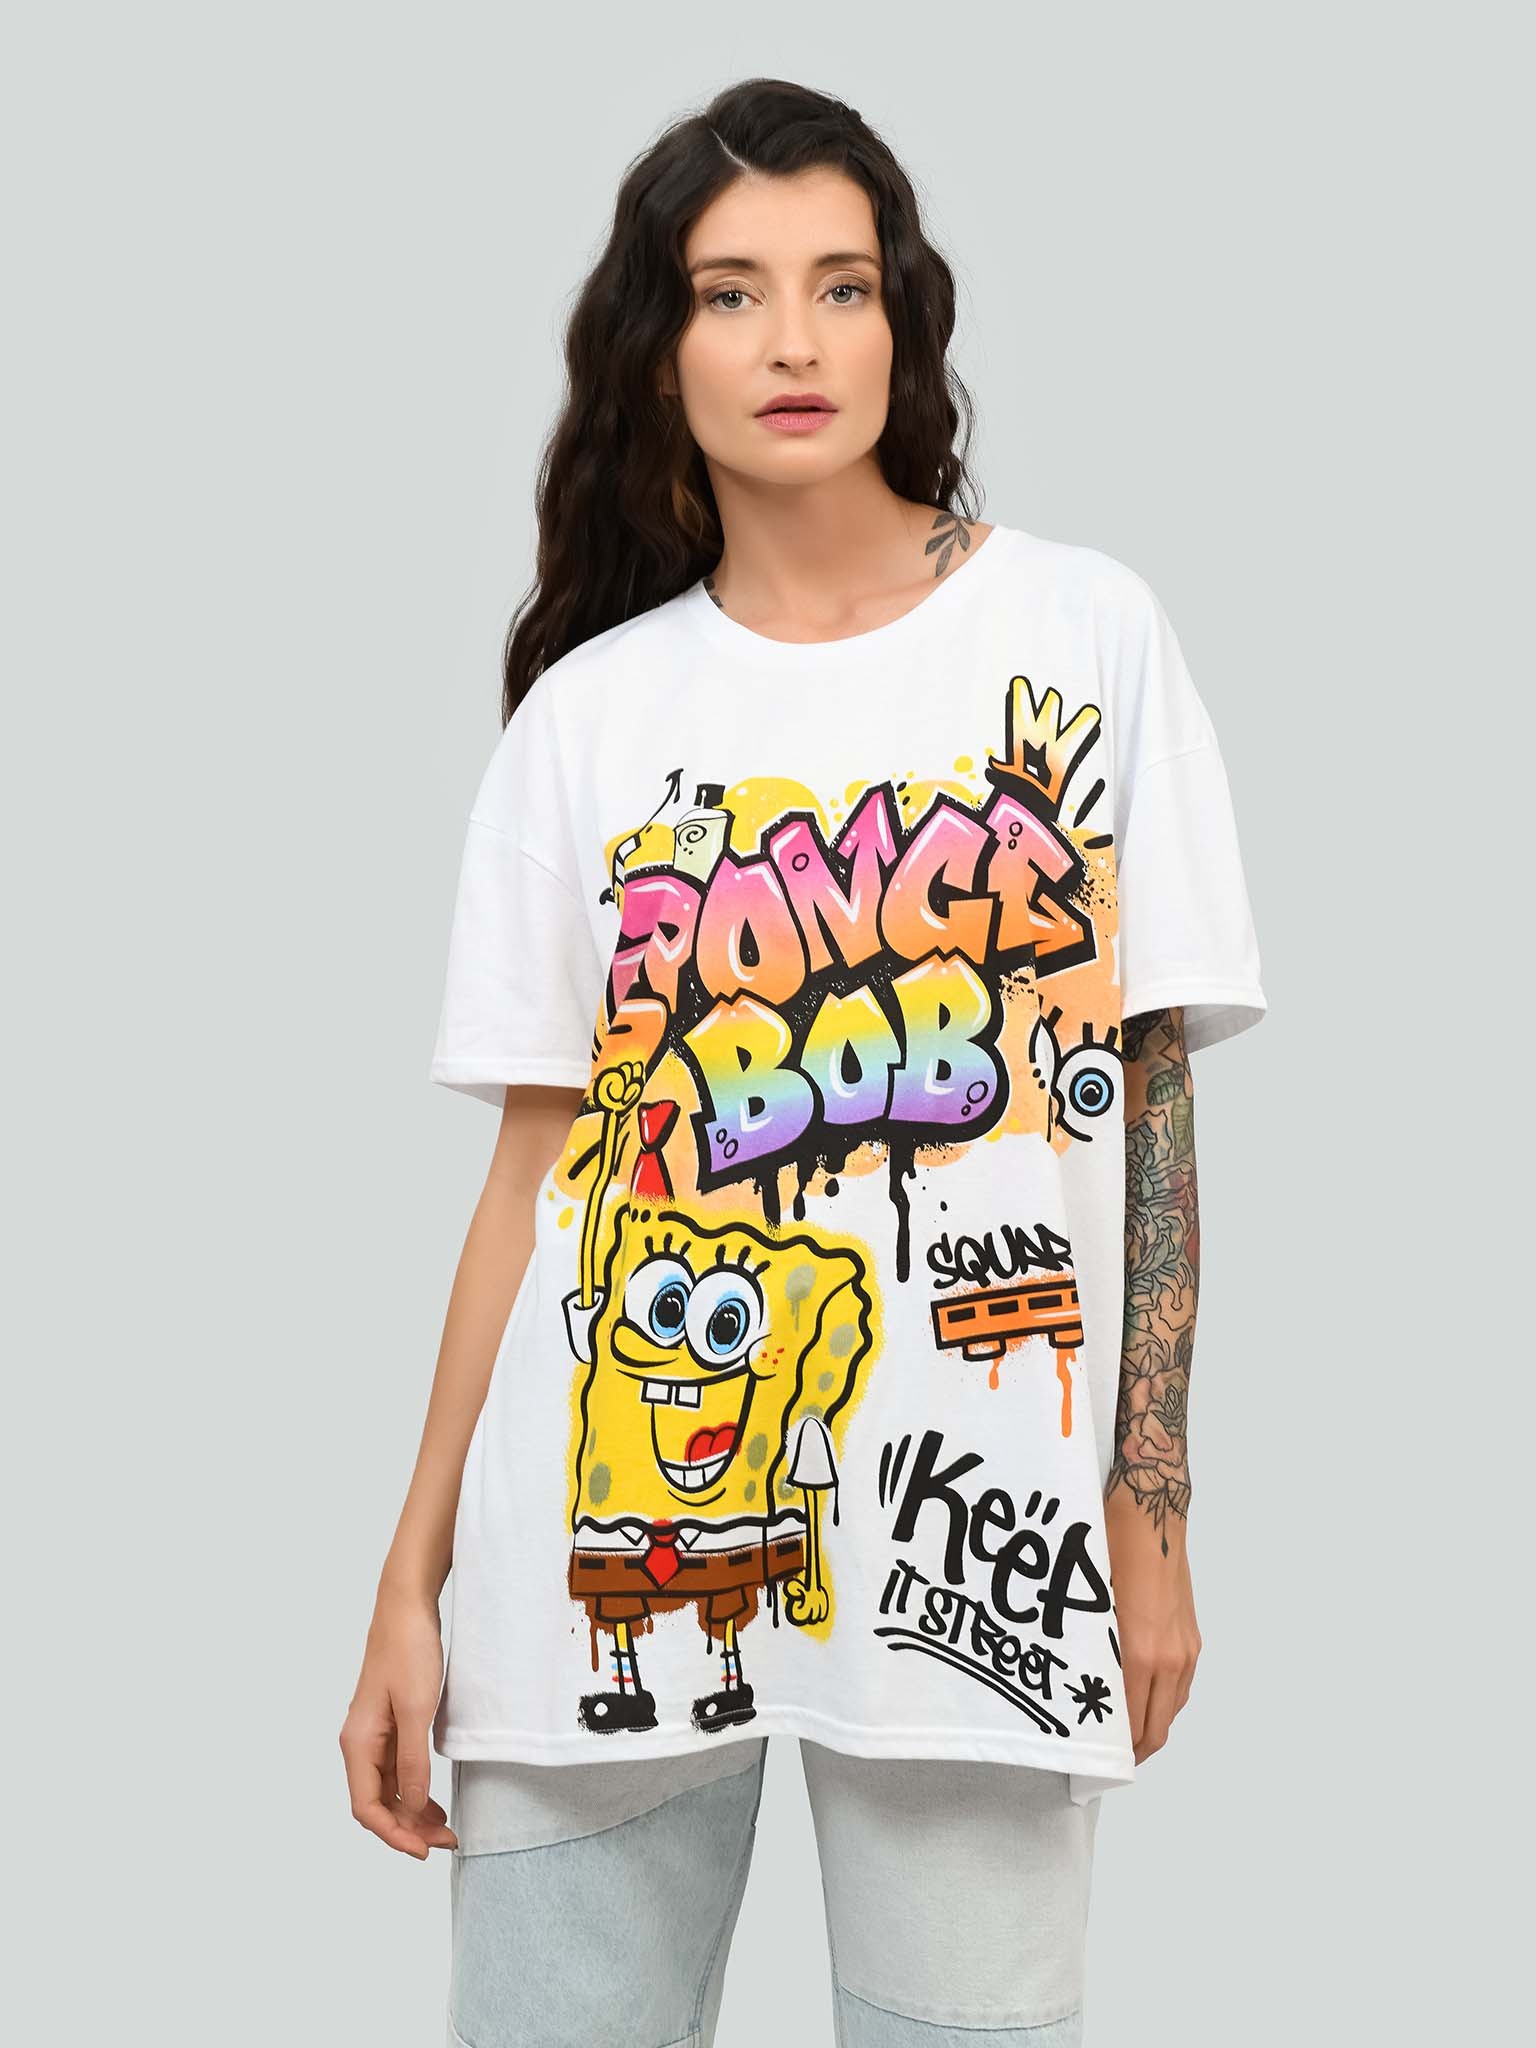 Gangster Spongebob With Graffity Shirt - Keep It Street Size Up To 5xl | Gangster Spongebob 2d Shirt